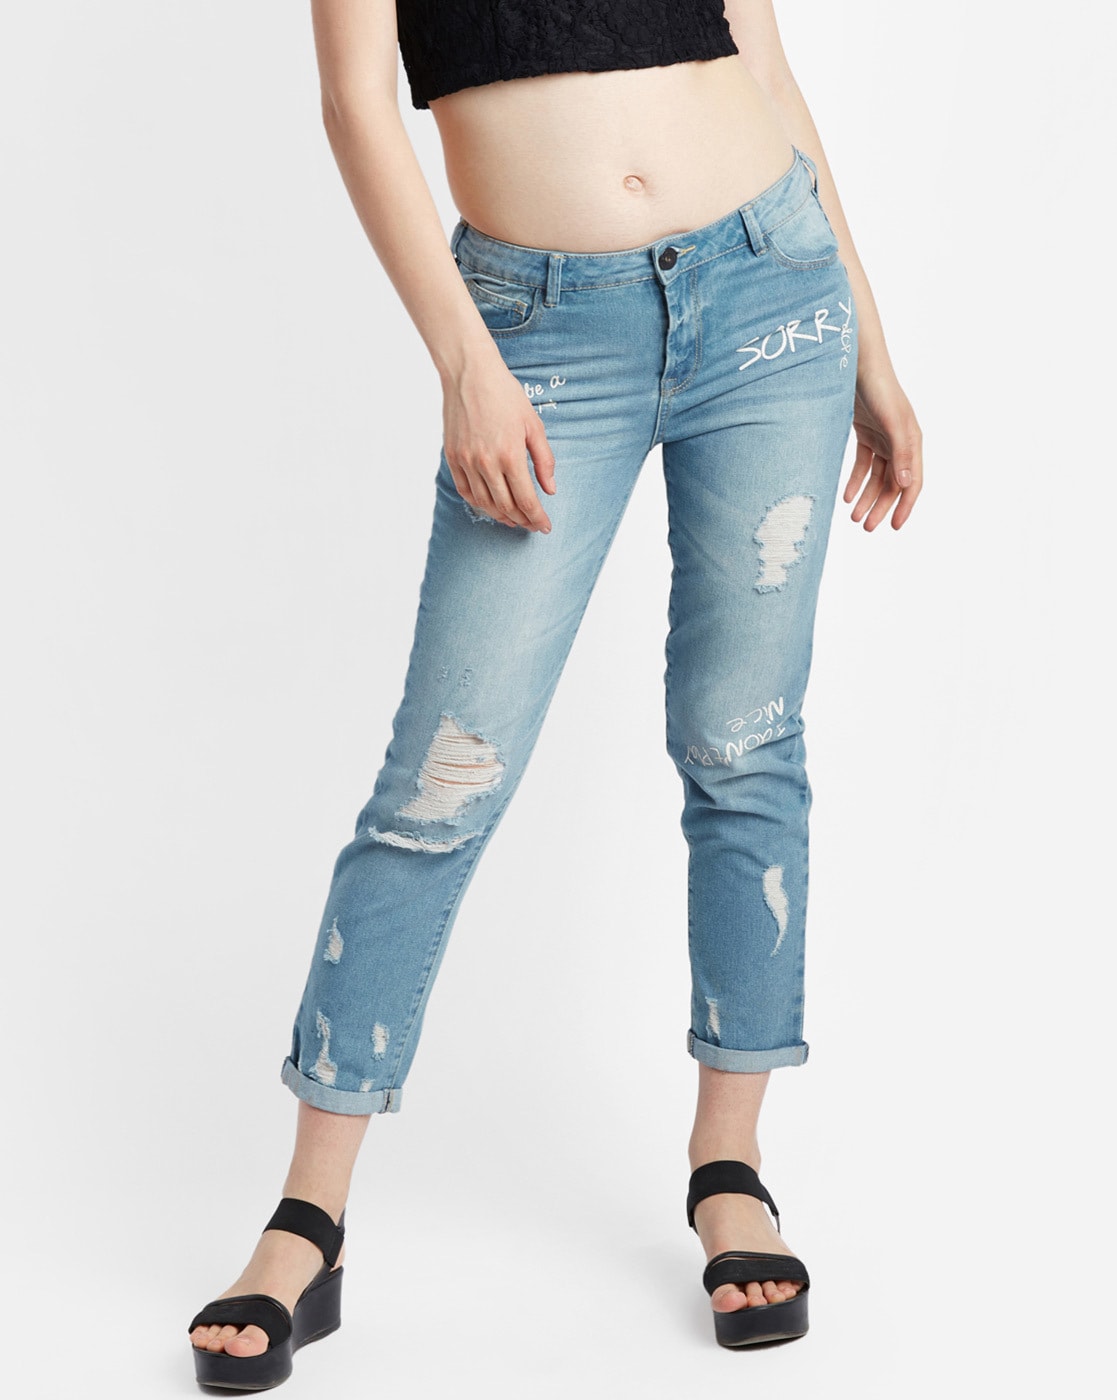 pantaloons women jeans